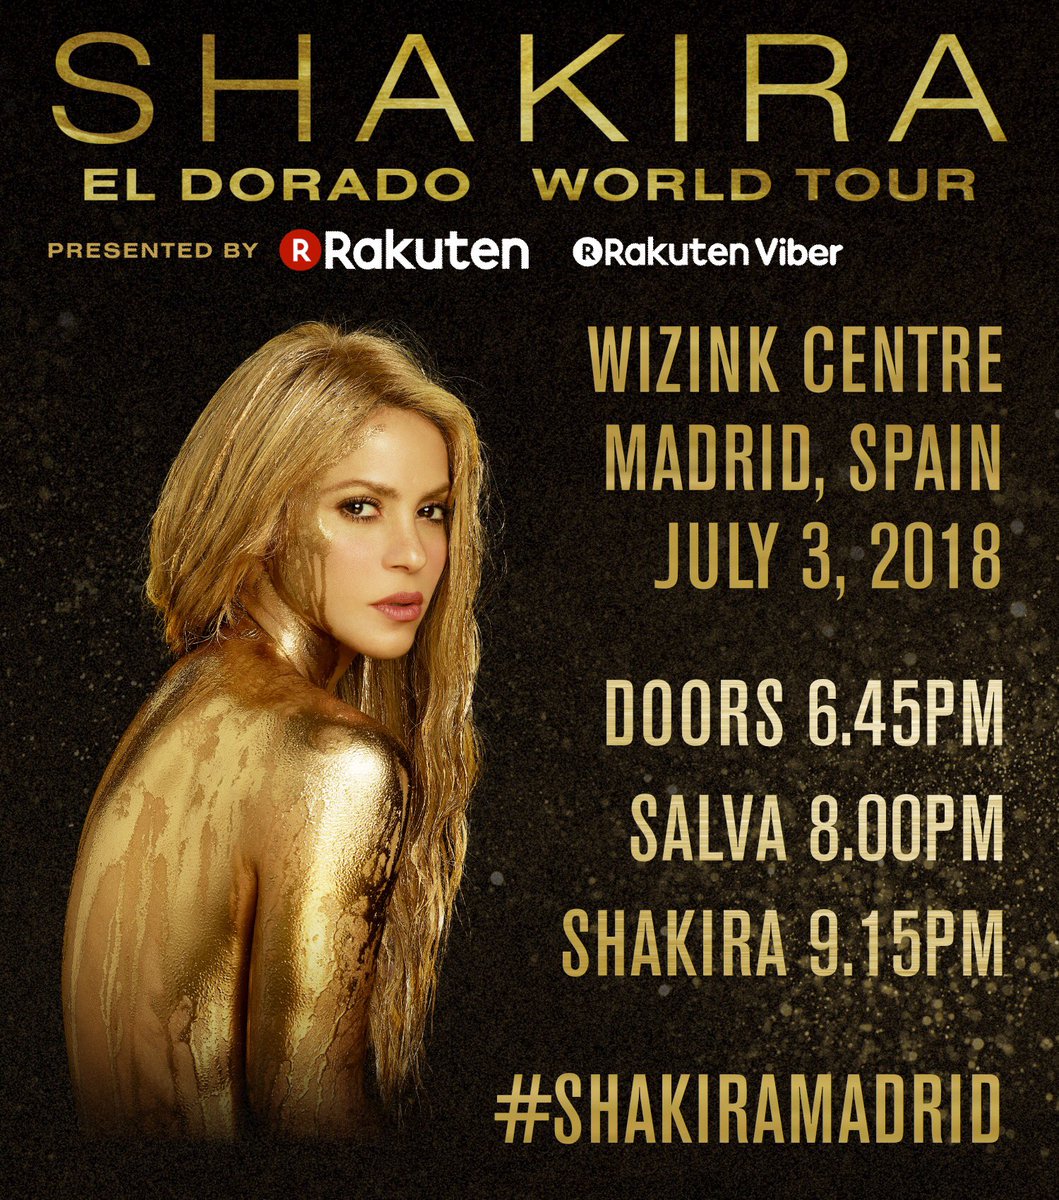 Hola Madrid! Aquí están los horarios para el concierto de Shakira en el @wizinkcenter. ShakHQ #ShakiraMadrid https://t.co/5i1w3UwKWQ